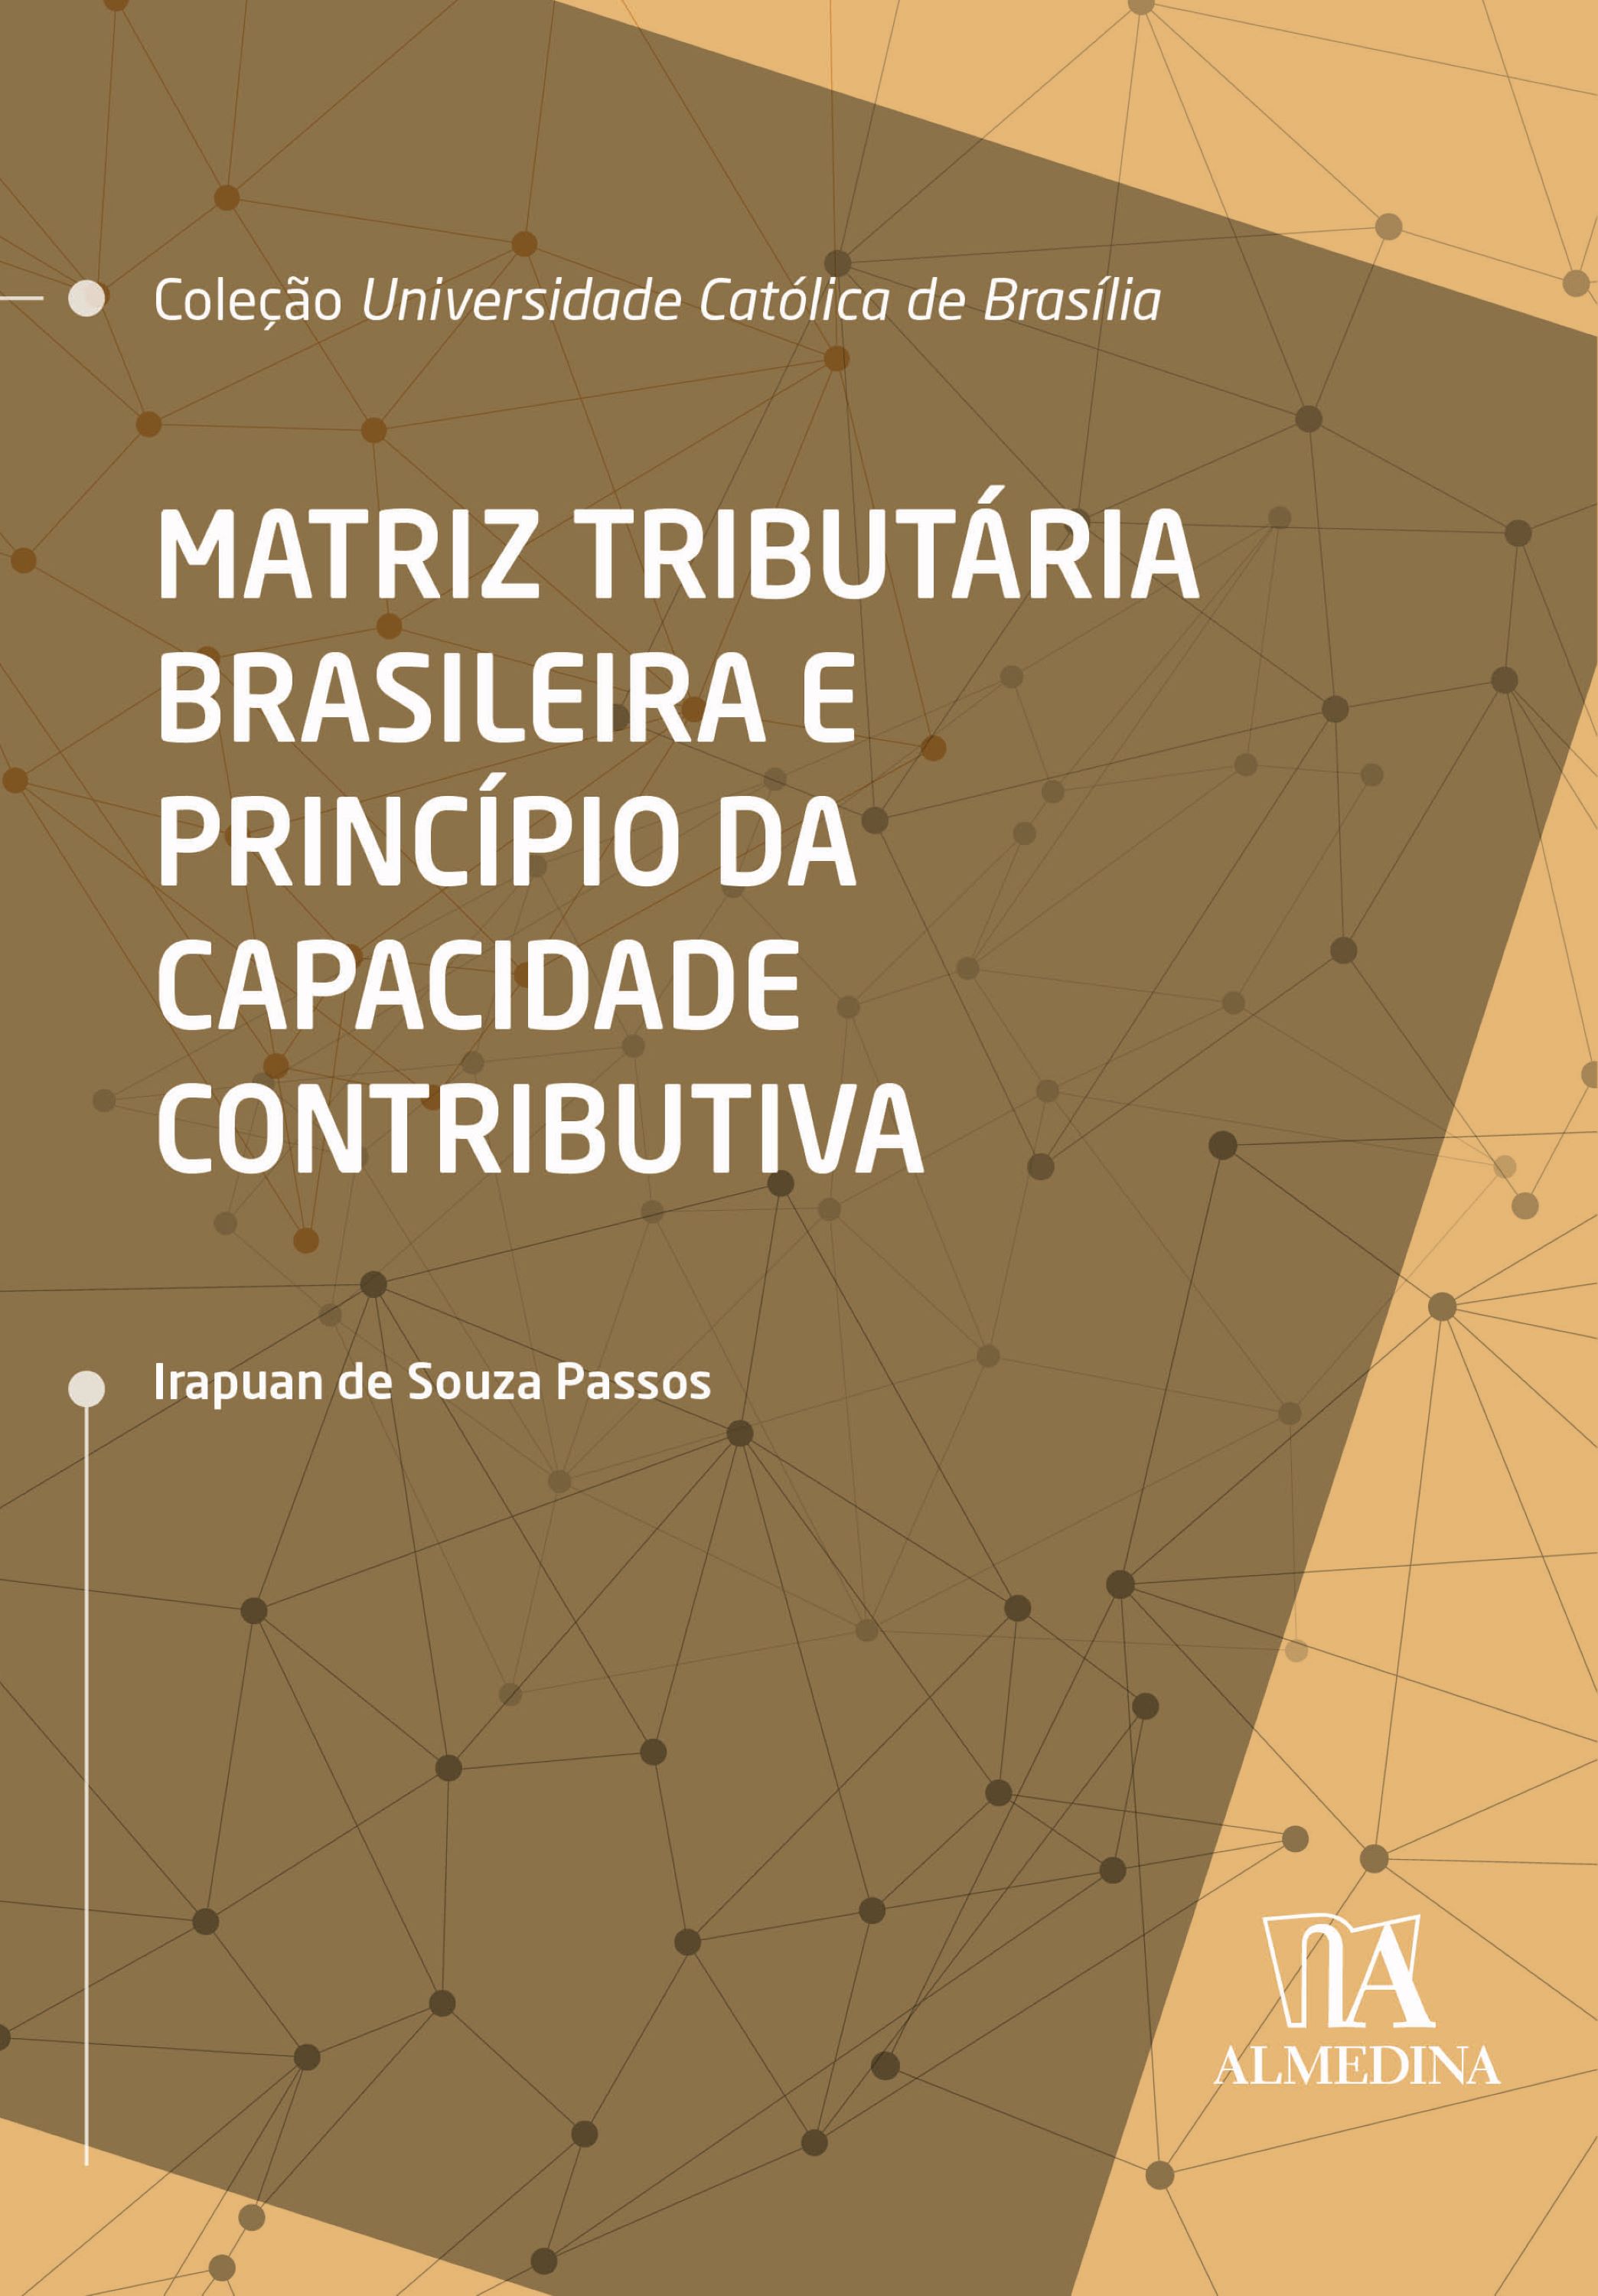 Matriz Tributária Brasileira e Princípio da Capacidade Contributiva